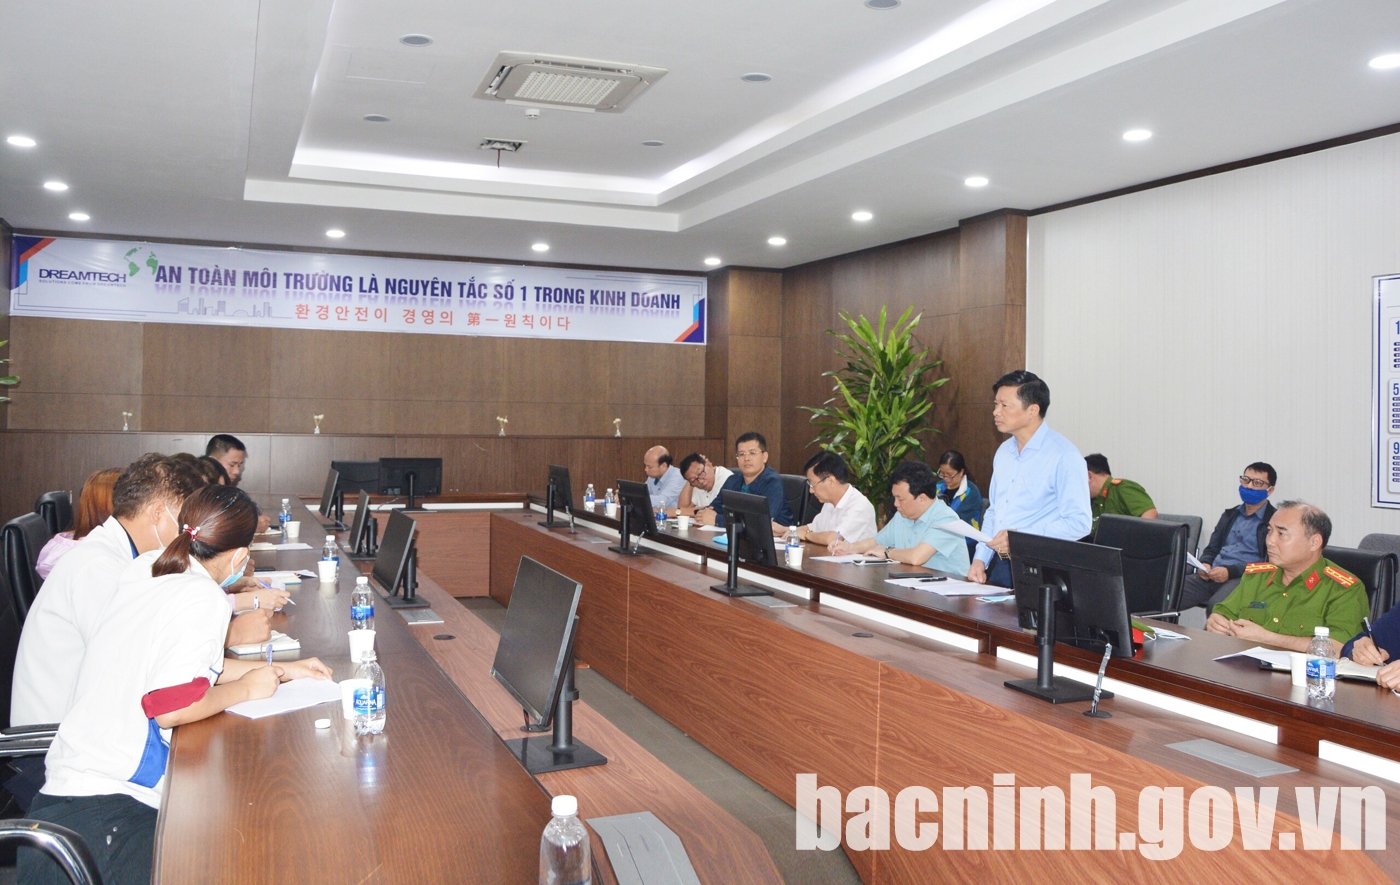 Phó Chủ tịch UBND tỉnh làm việc về vụ cháy tại Công ty TNHH Dreamtech Việt Nam